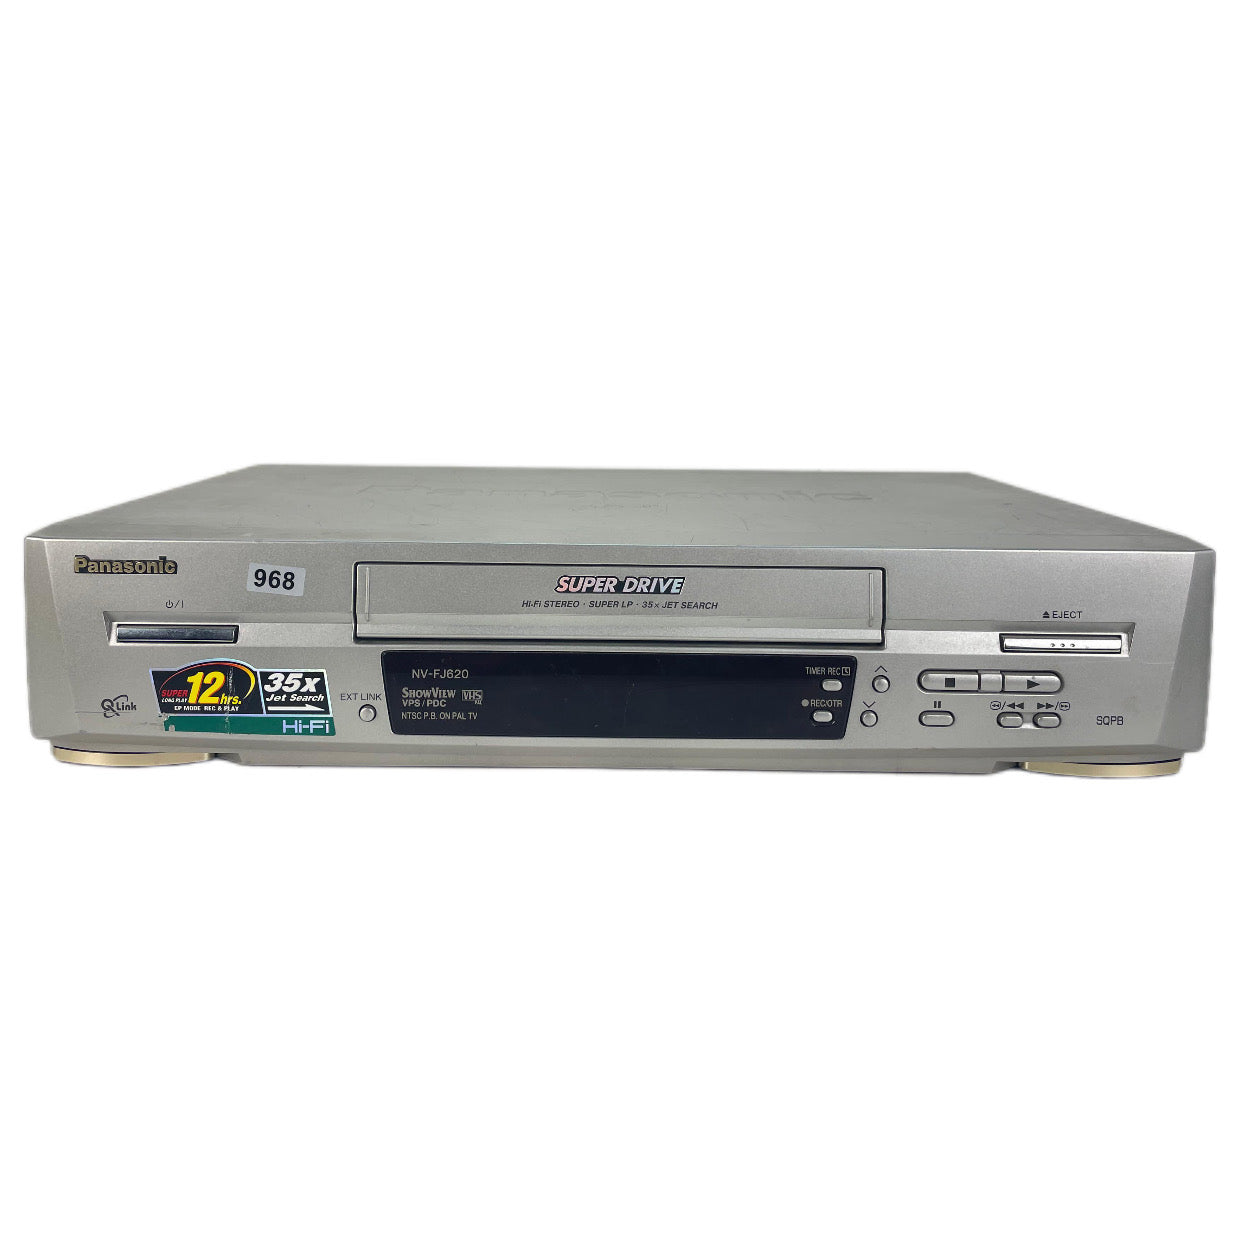 Panasonic NV-FJ620 Super Drive VHS Video Cassette Recorder